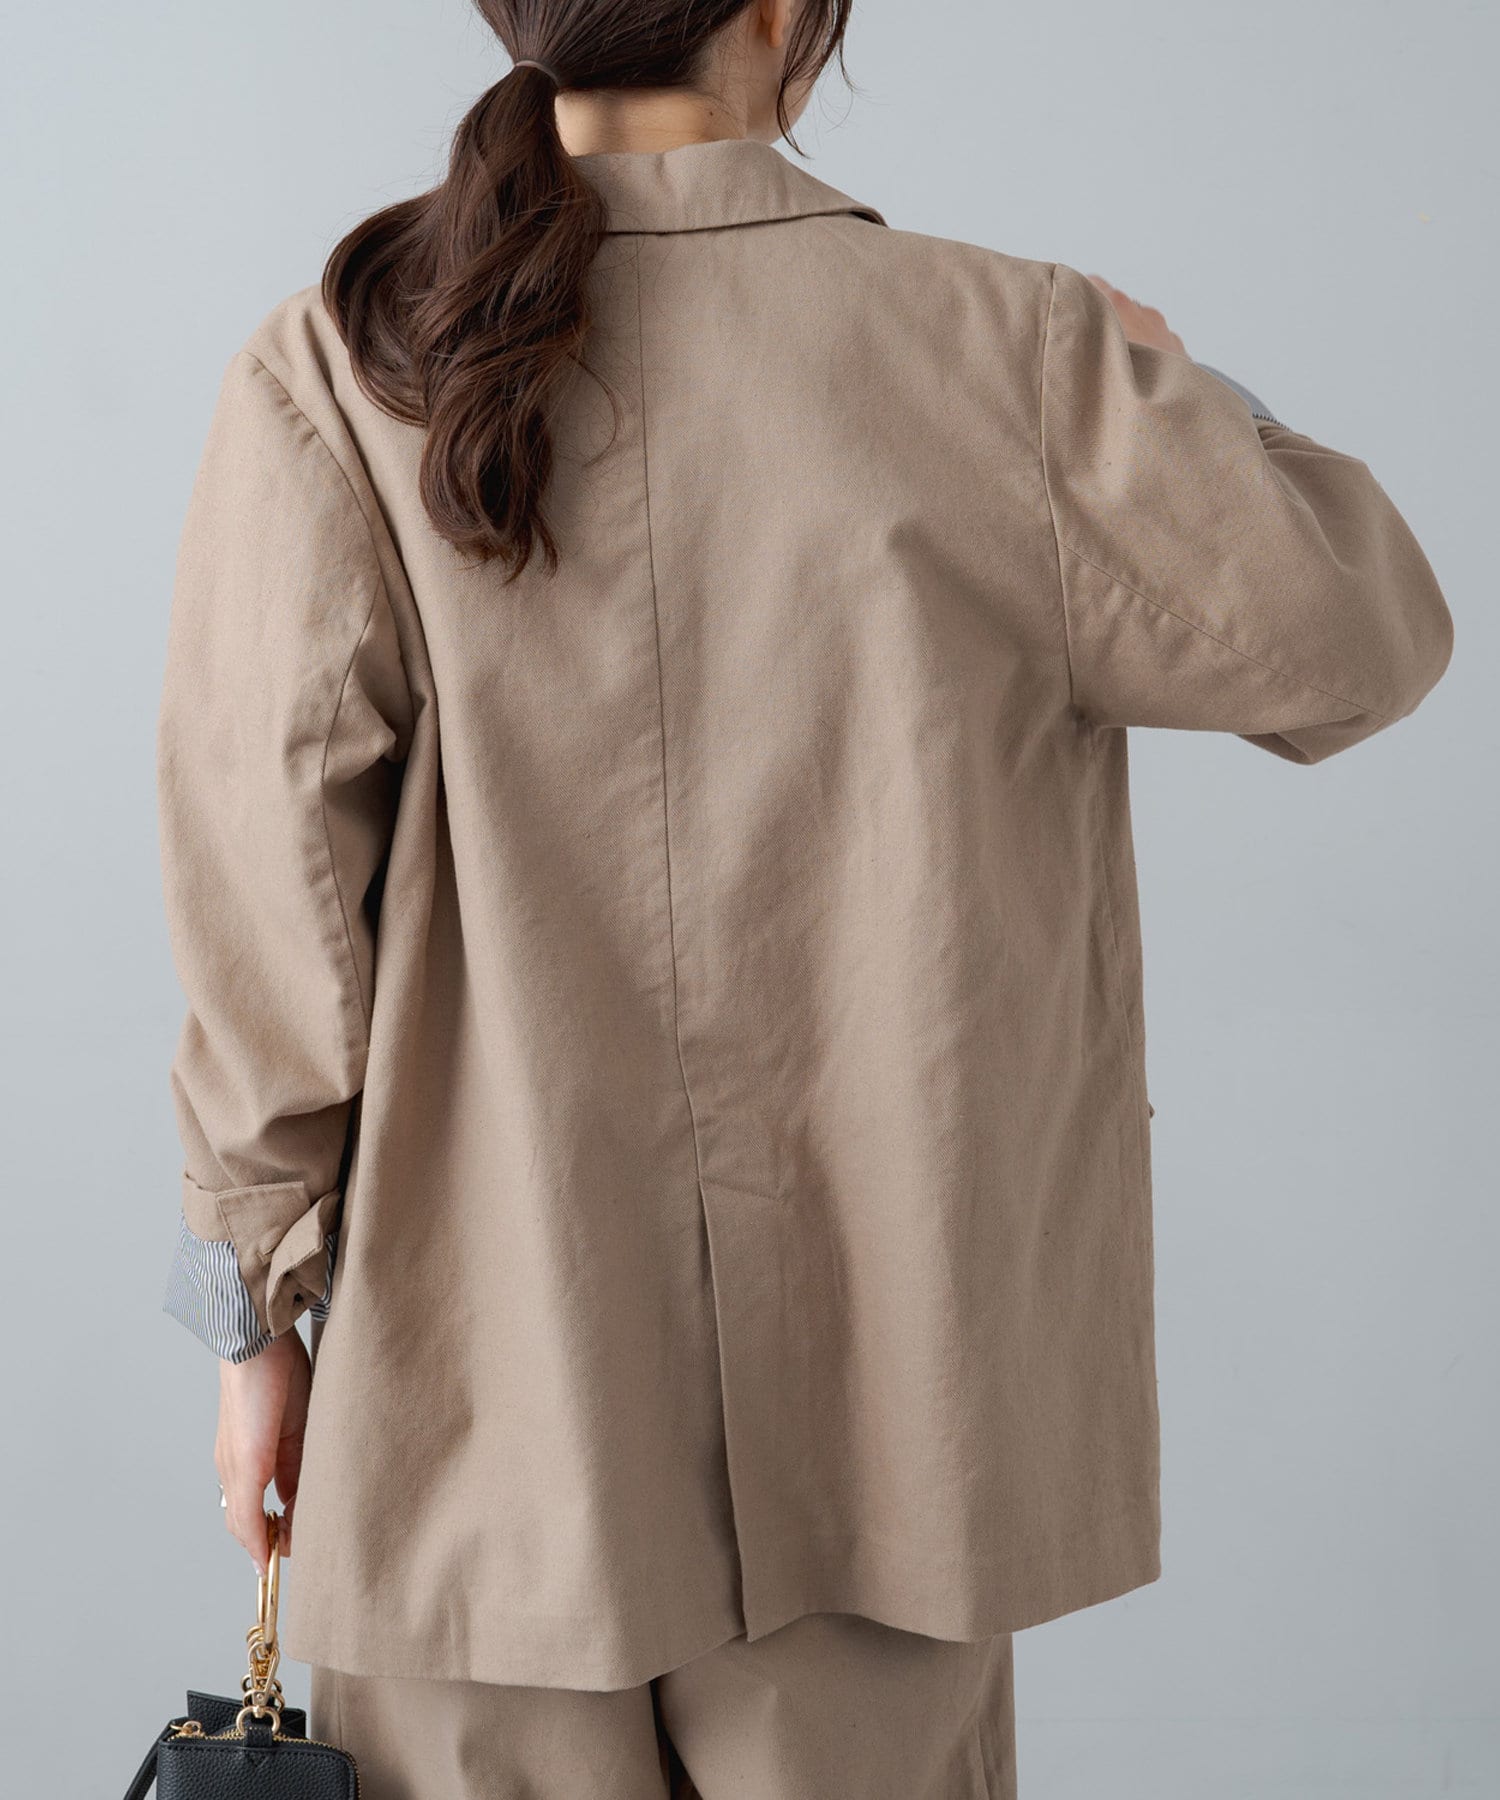 綿麻テーラードジャケット | PUAL CE CIN(ピュアルセシン)レディース 